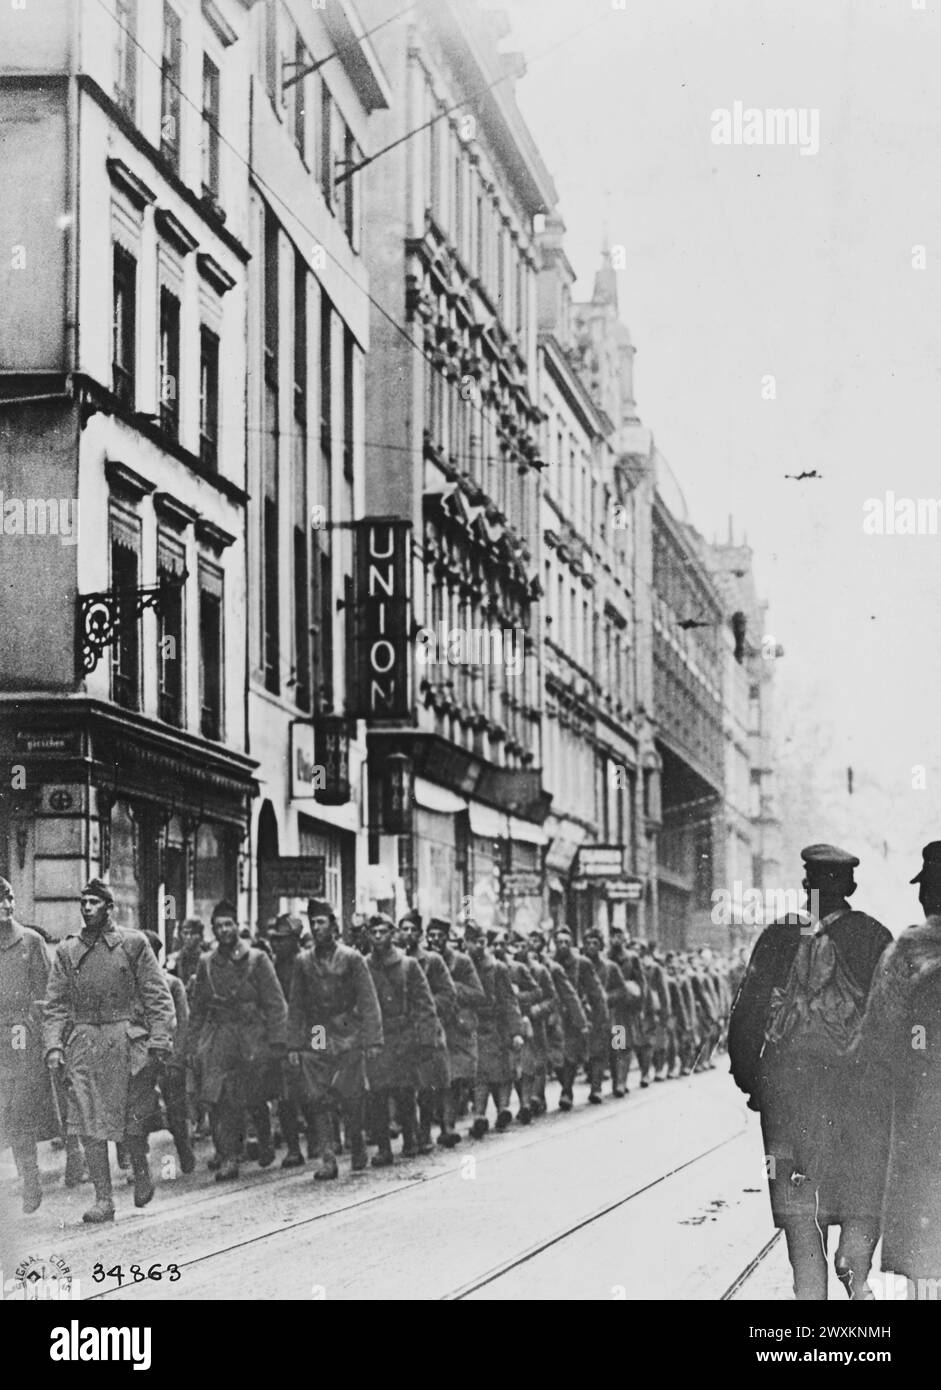 Colonne de la 18e infanterie, première Division, marchant dans les rues de Coblenz Allemagne CA. 1918 Banque D'Images